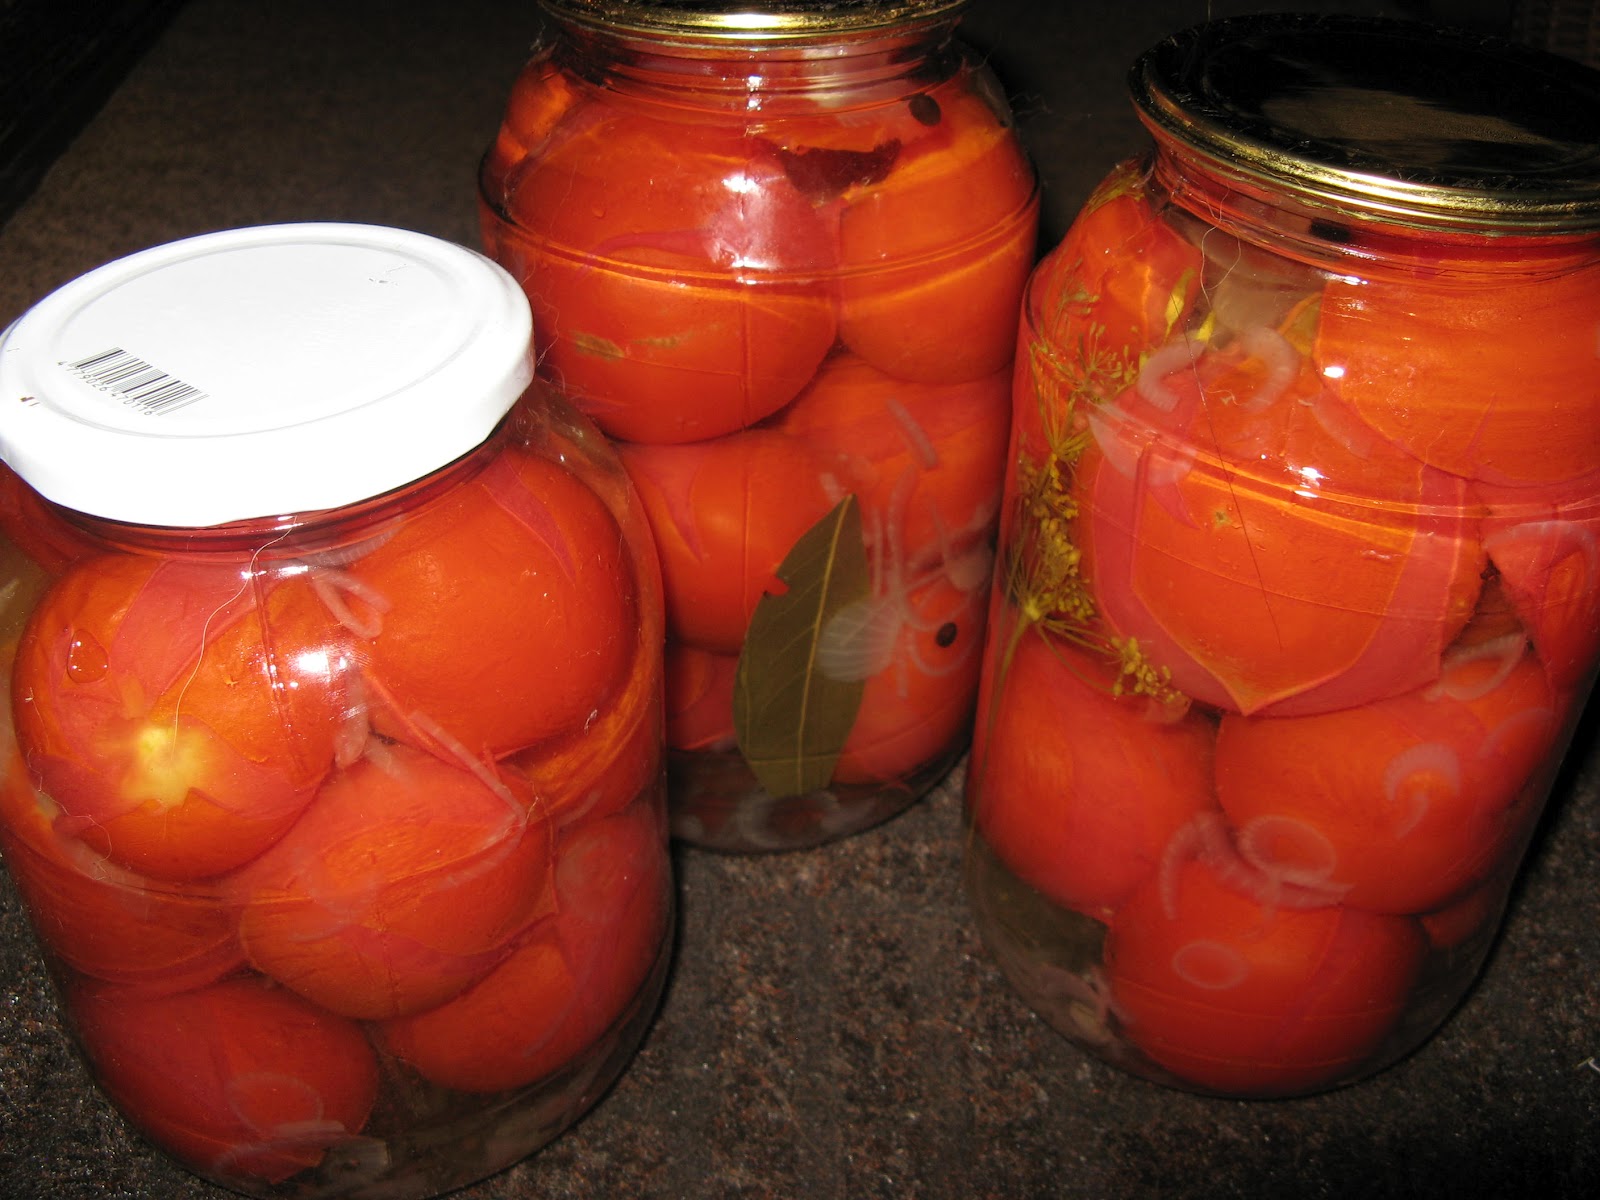 Соленые (квашеные) помидоры на зиму